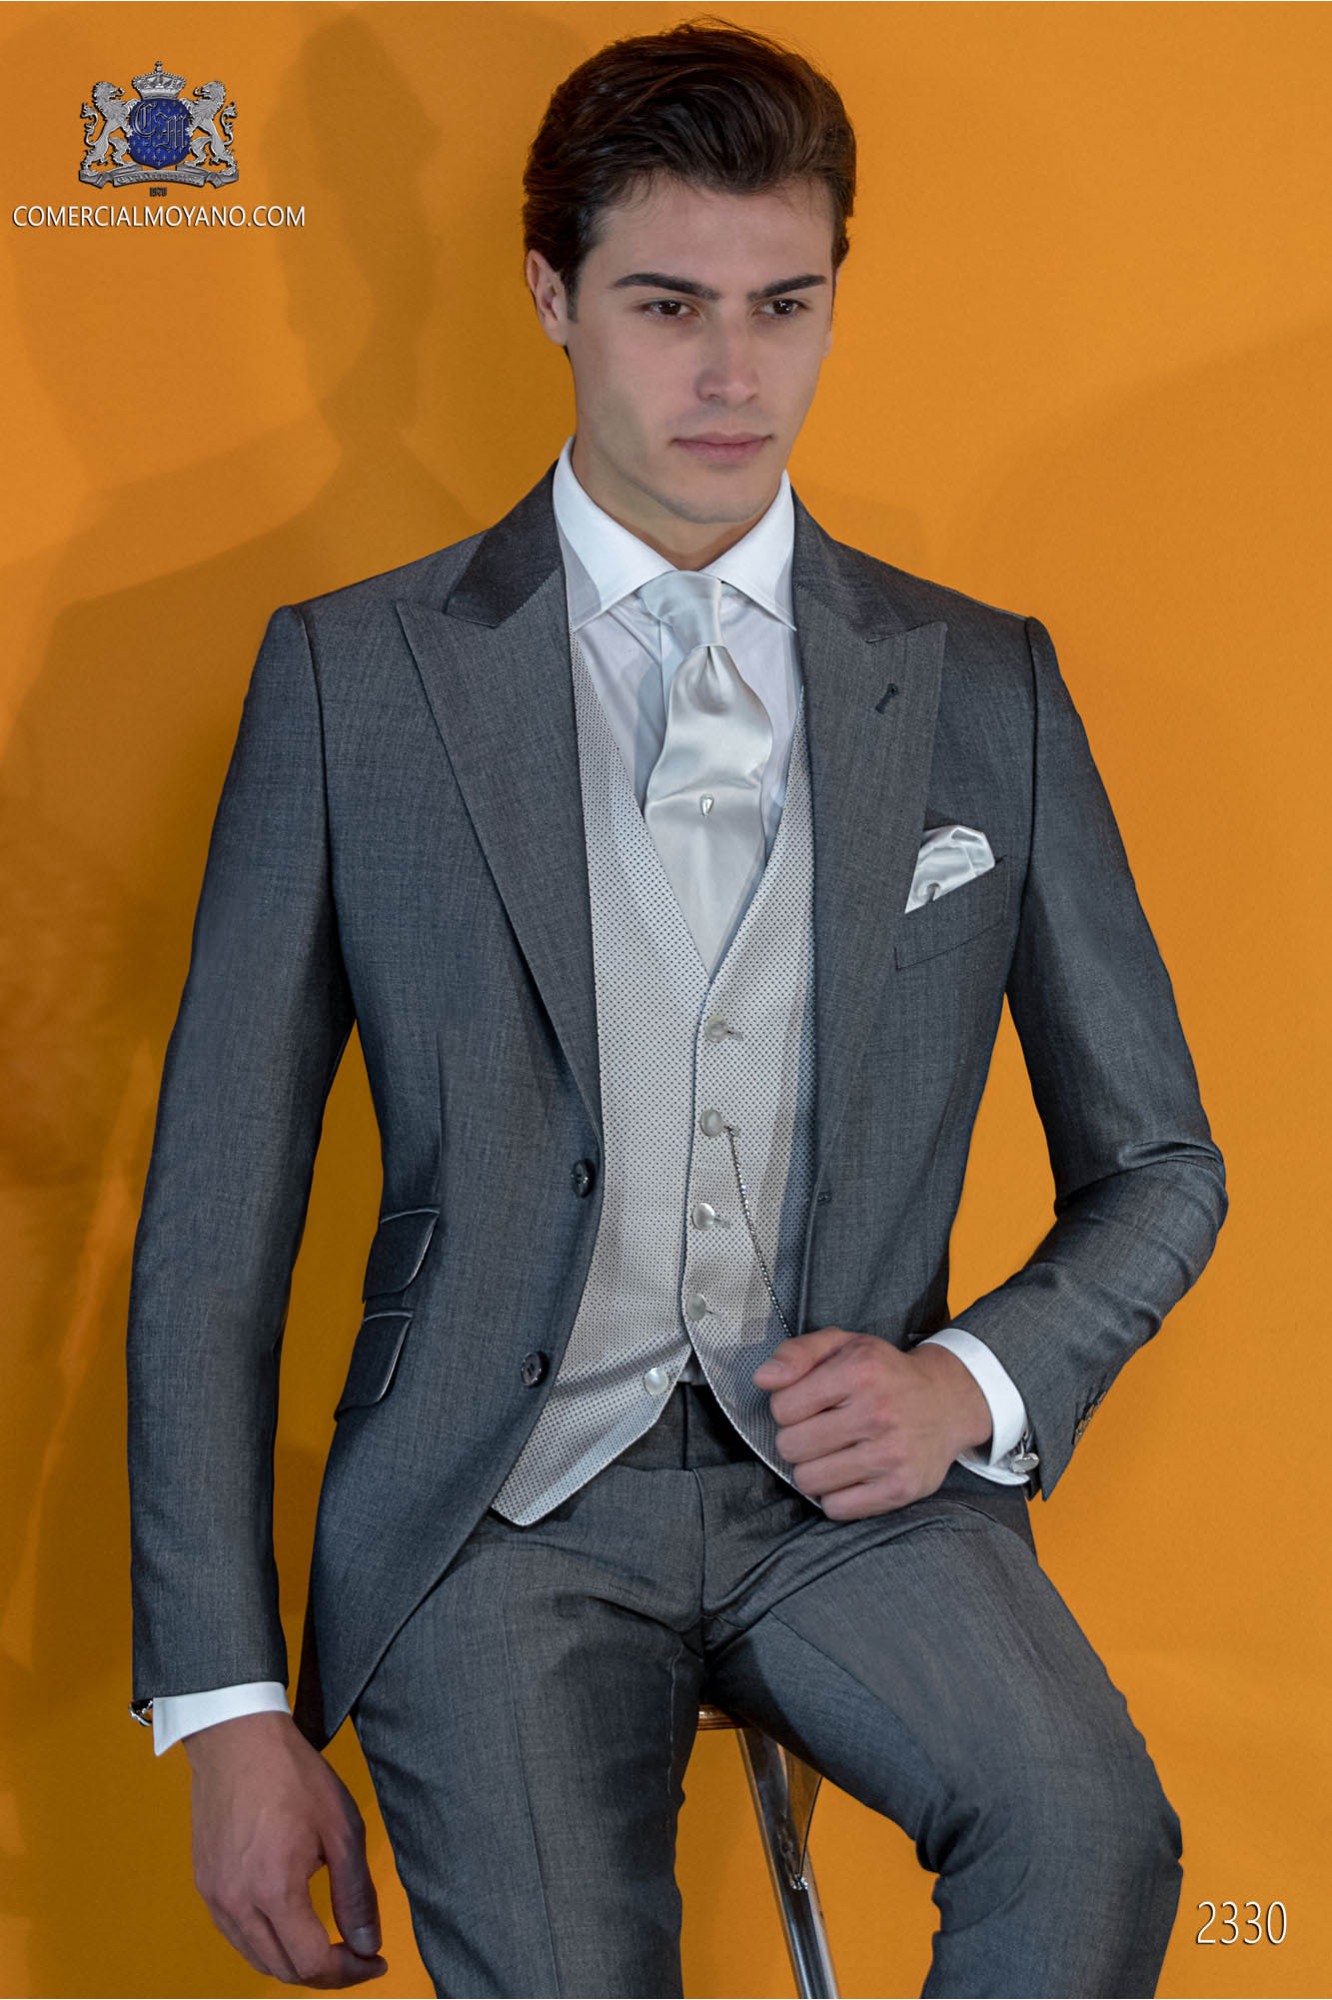 Traje de novio gris mixto lana mohair alpaca modelo: 2330 Mario Moyano colección Gentleman